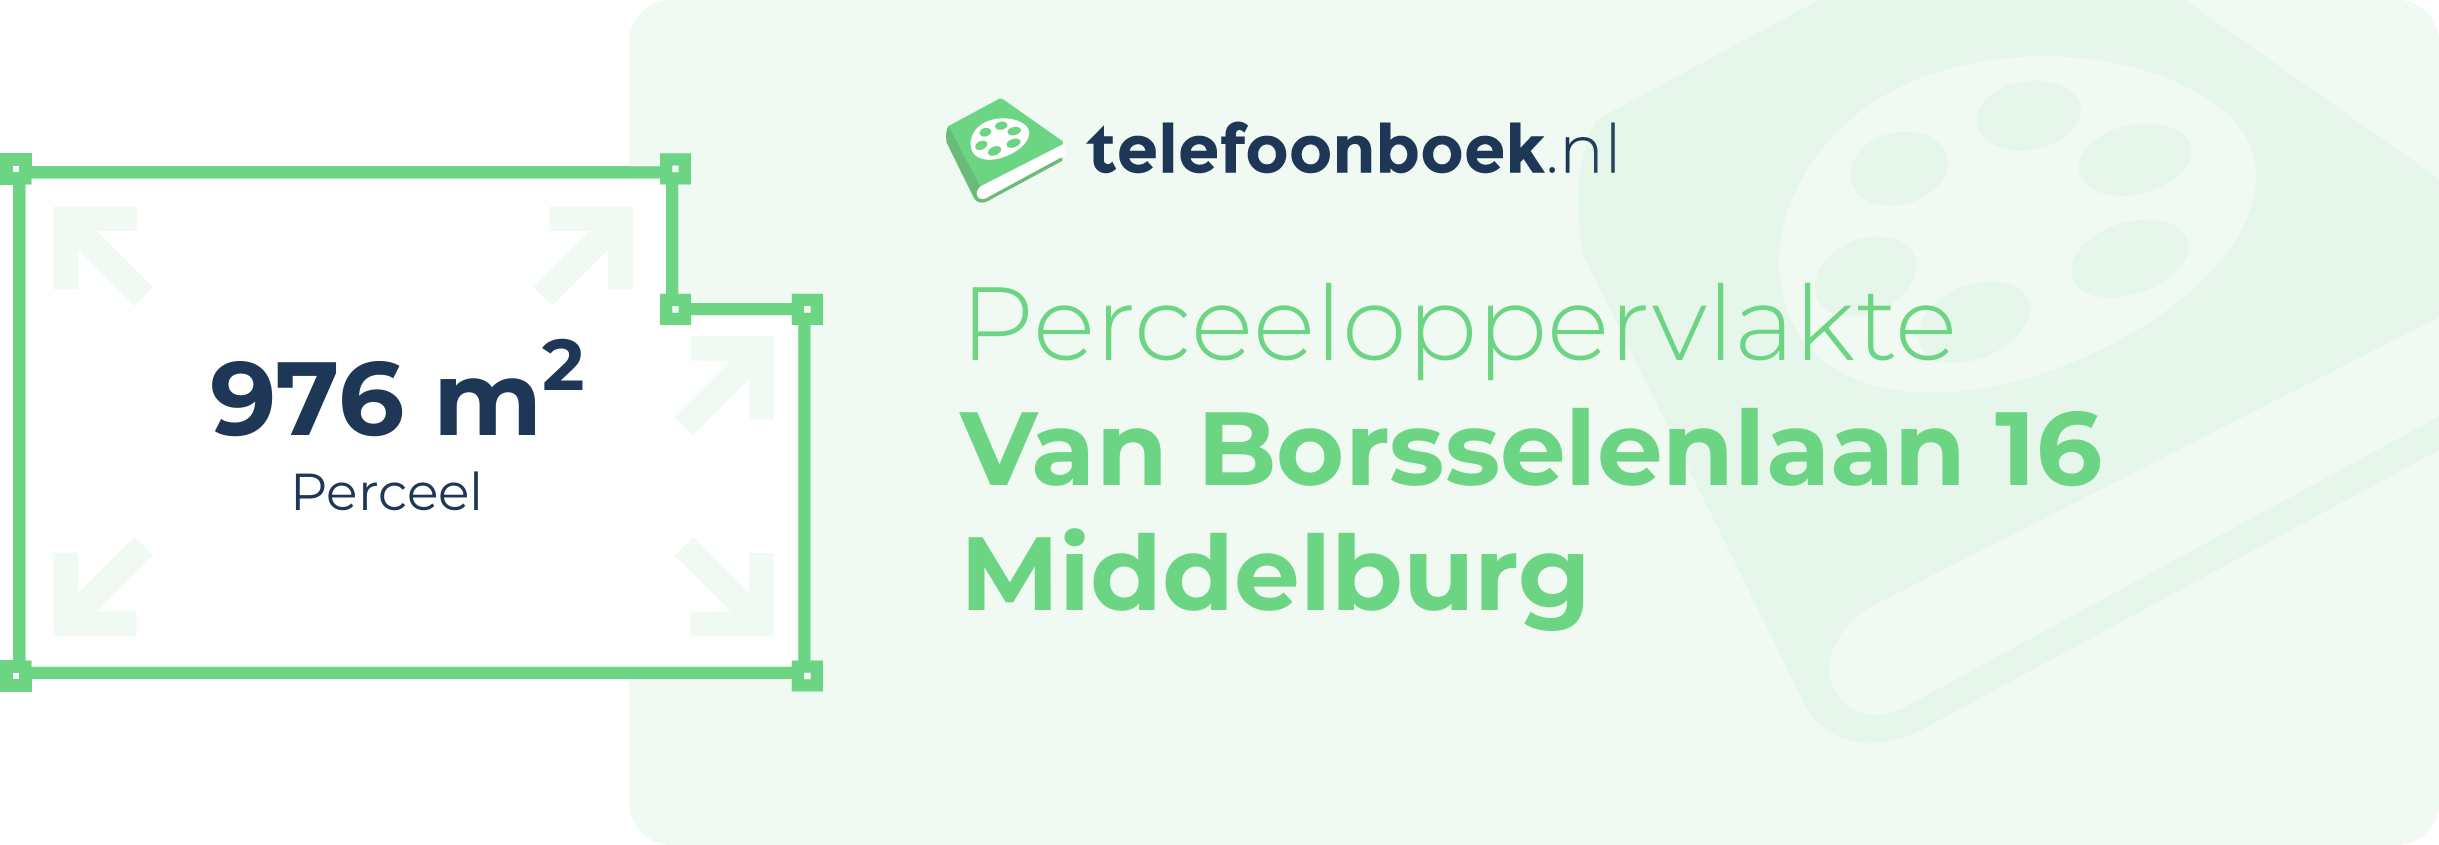 Perceeloppervlakte Van Borsselenlaan 16 Middelburg